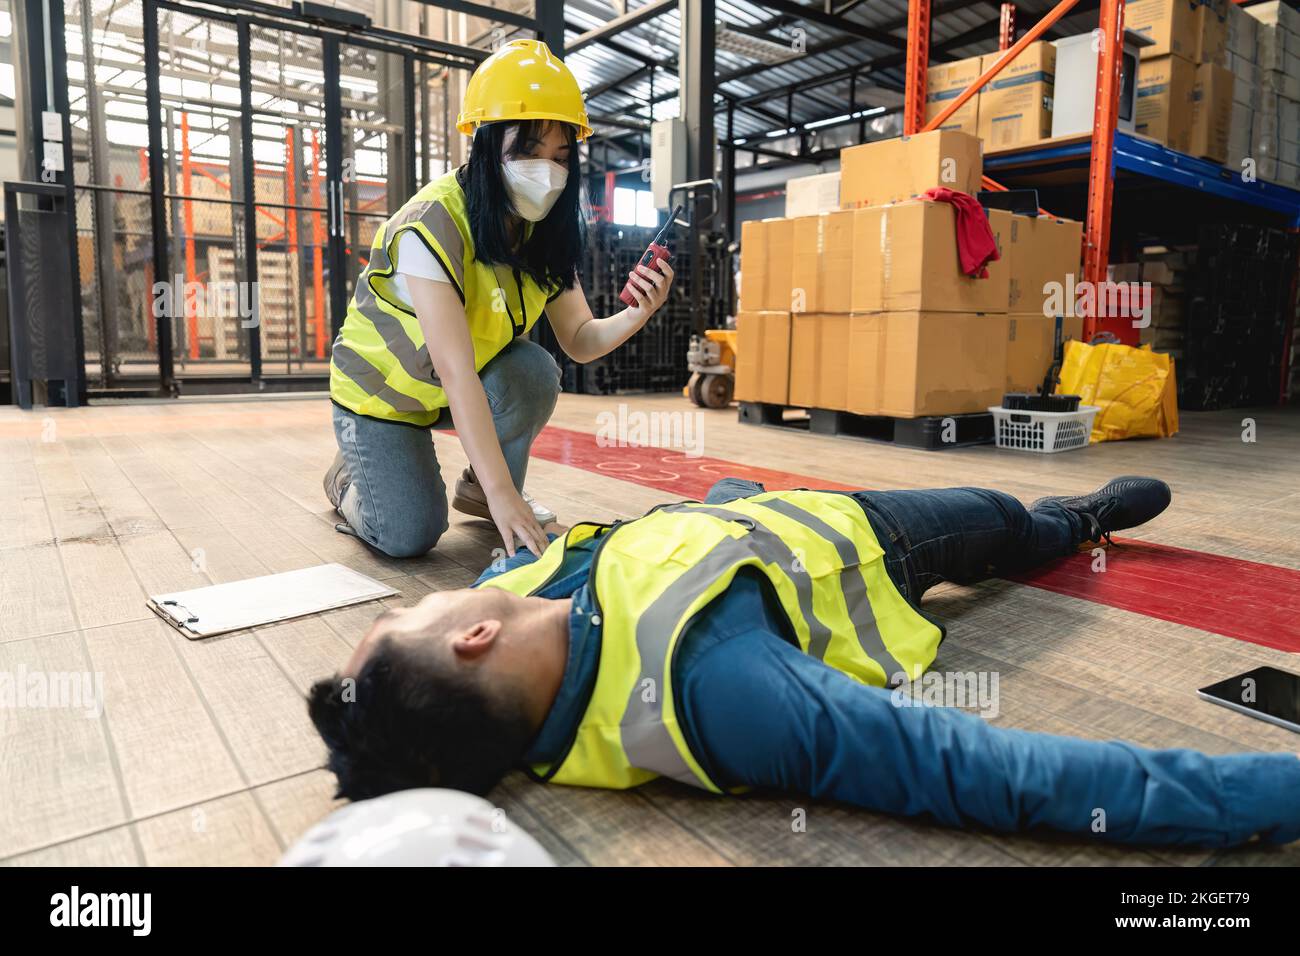 Une travailleuse d'entrepôt utilisant un talkie-walkie a appelé l'équipe de premiers secours de l'usine pour sauver un homme inconscient. laissez-passer ou rideaux occultants, dangereux Banque D'Images